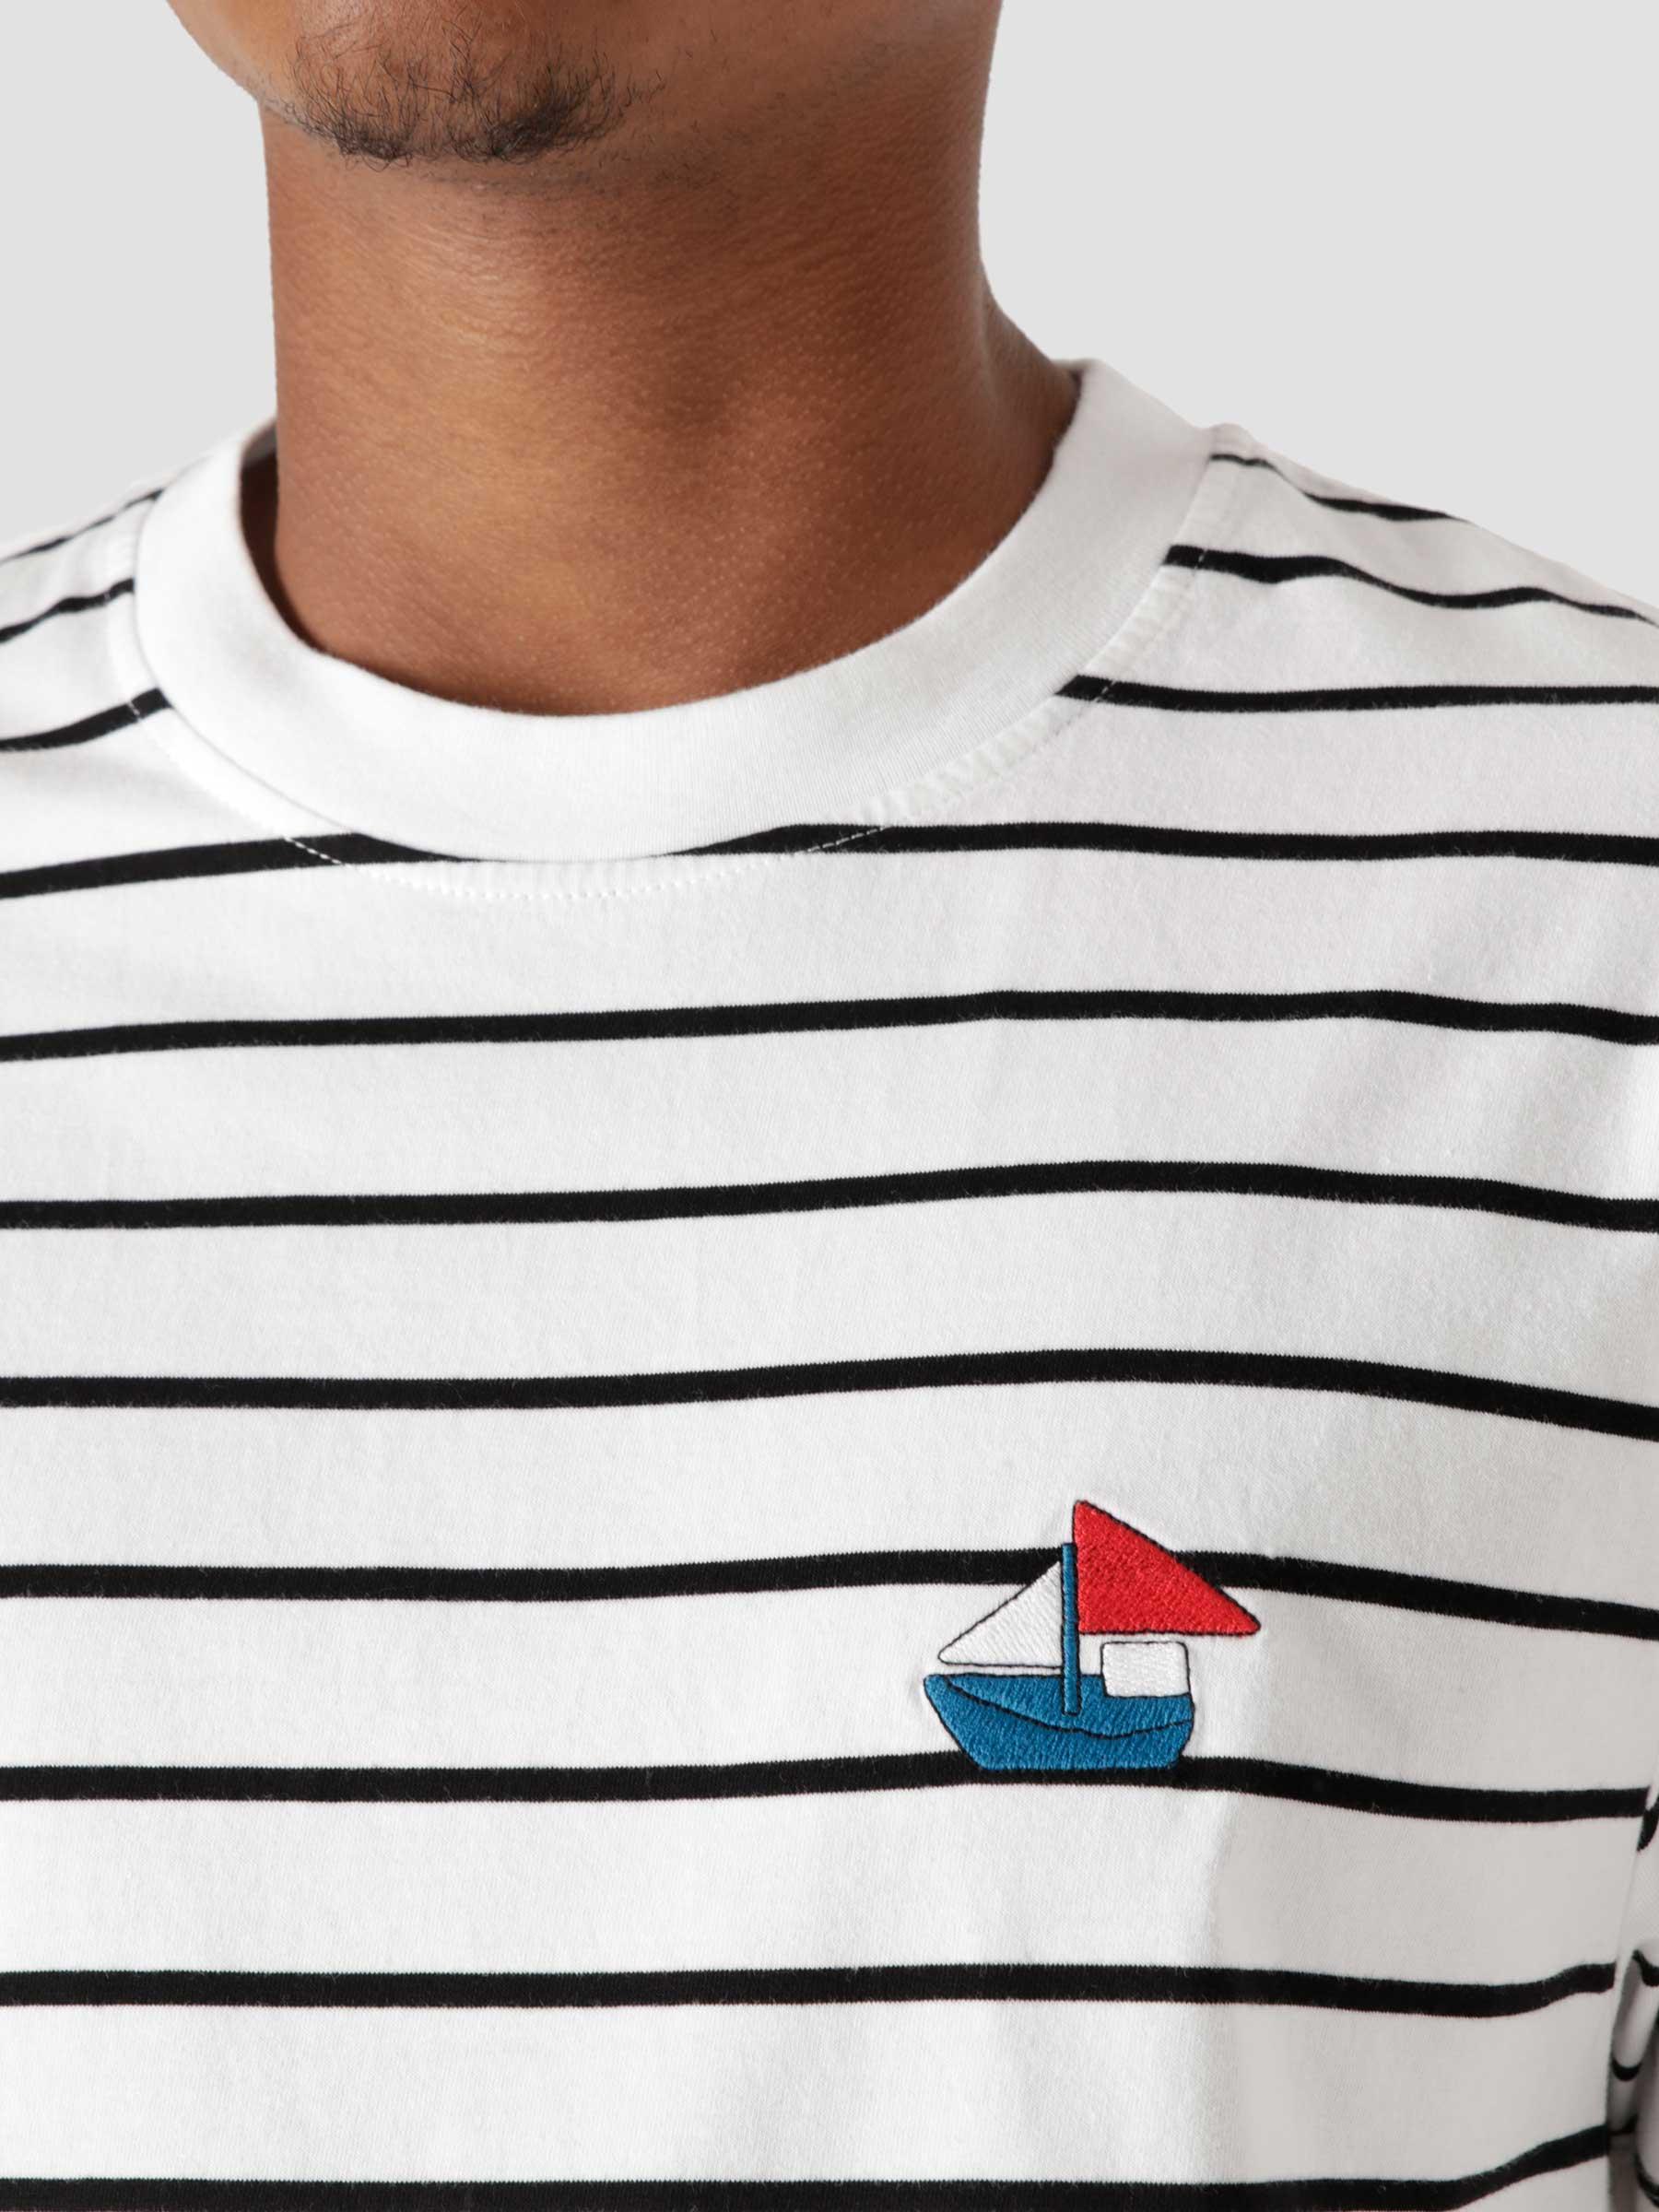 Paper Boat Striper T-Shirt White  46110